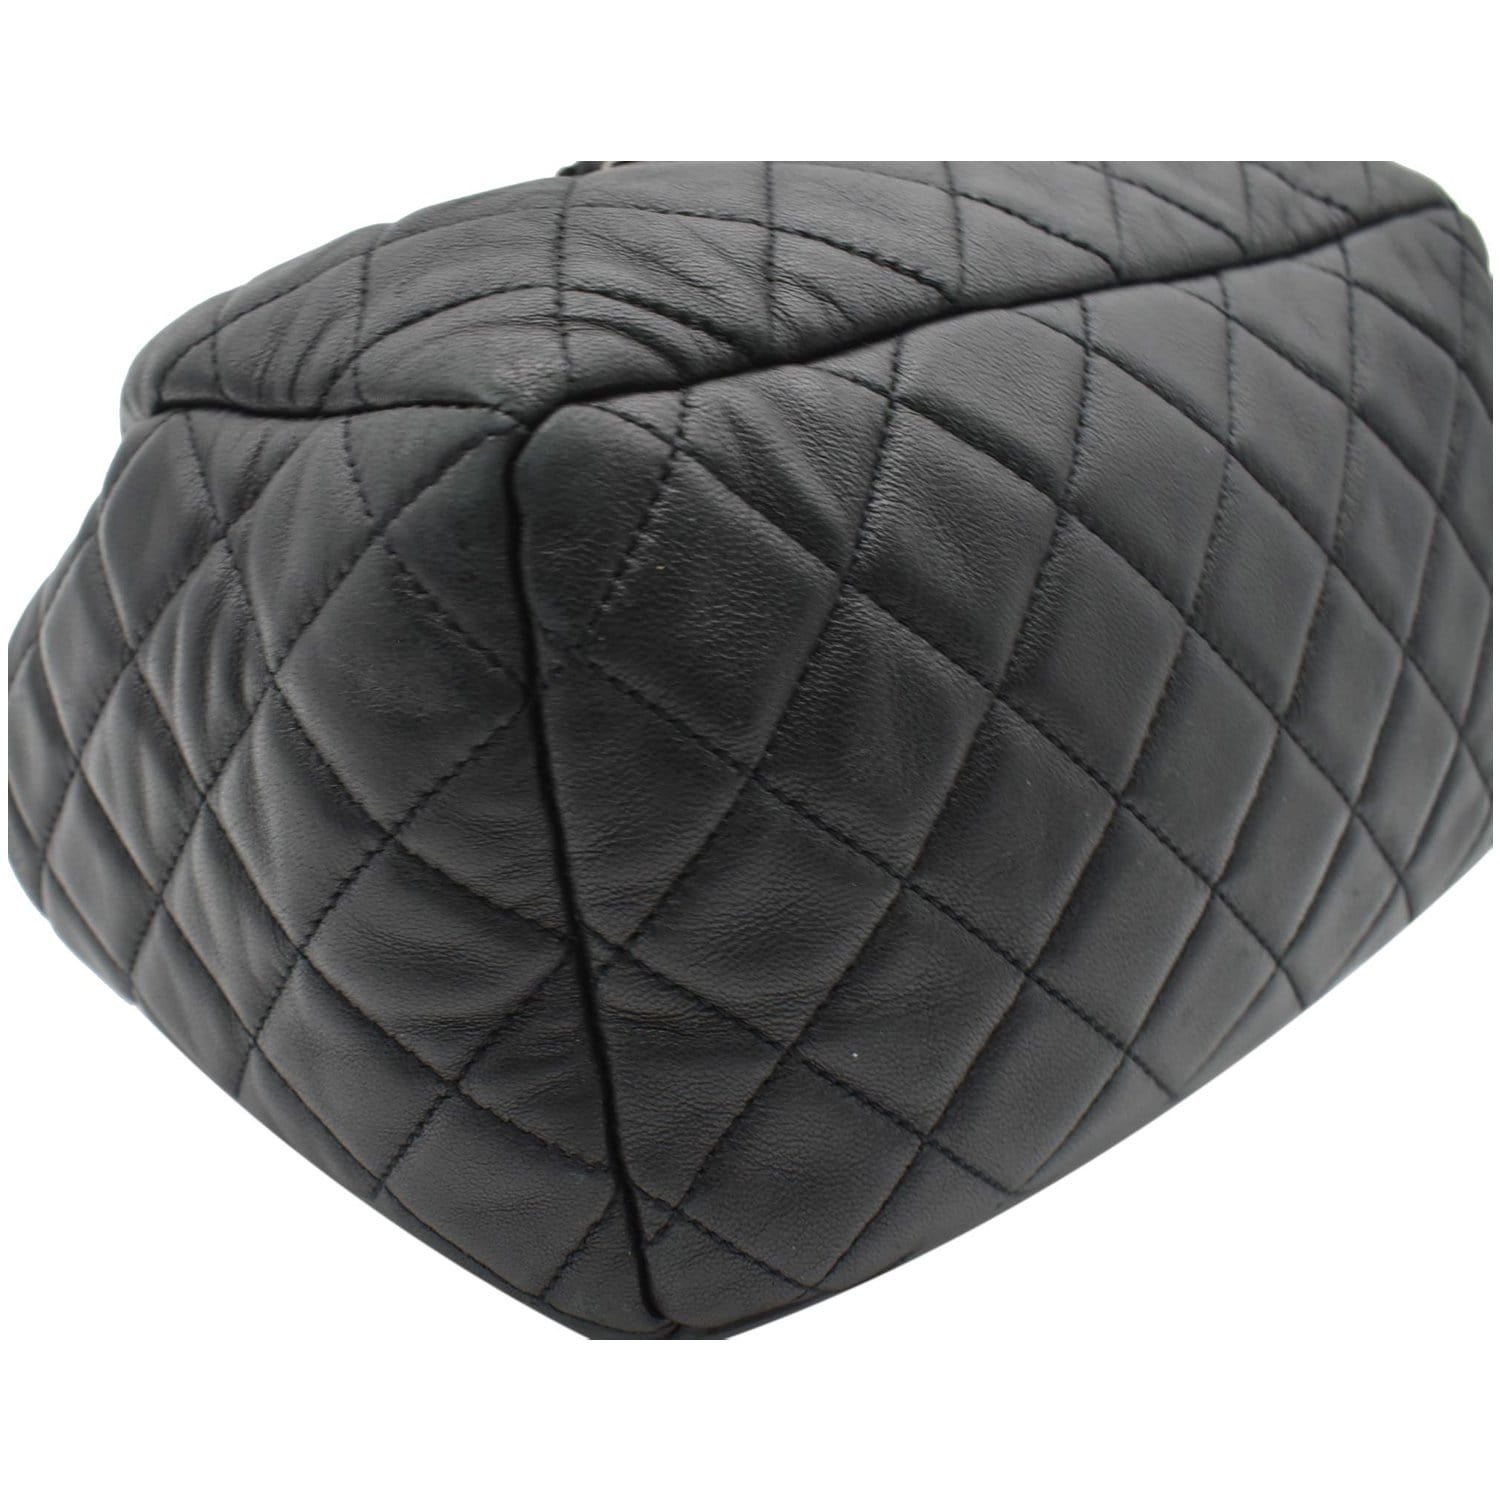 Vintage CHANEL black leather double envelop style flap shoulder